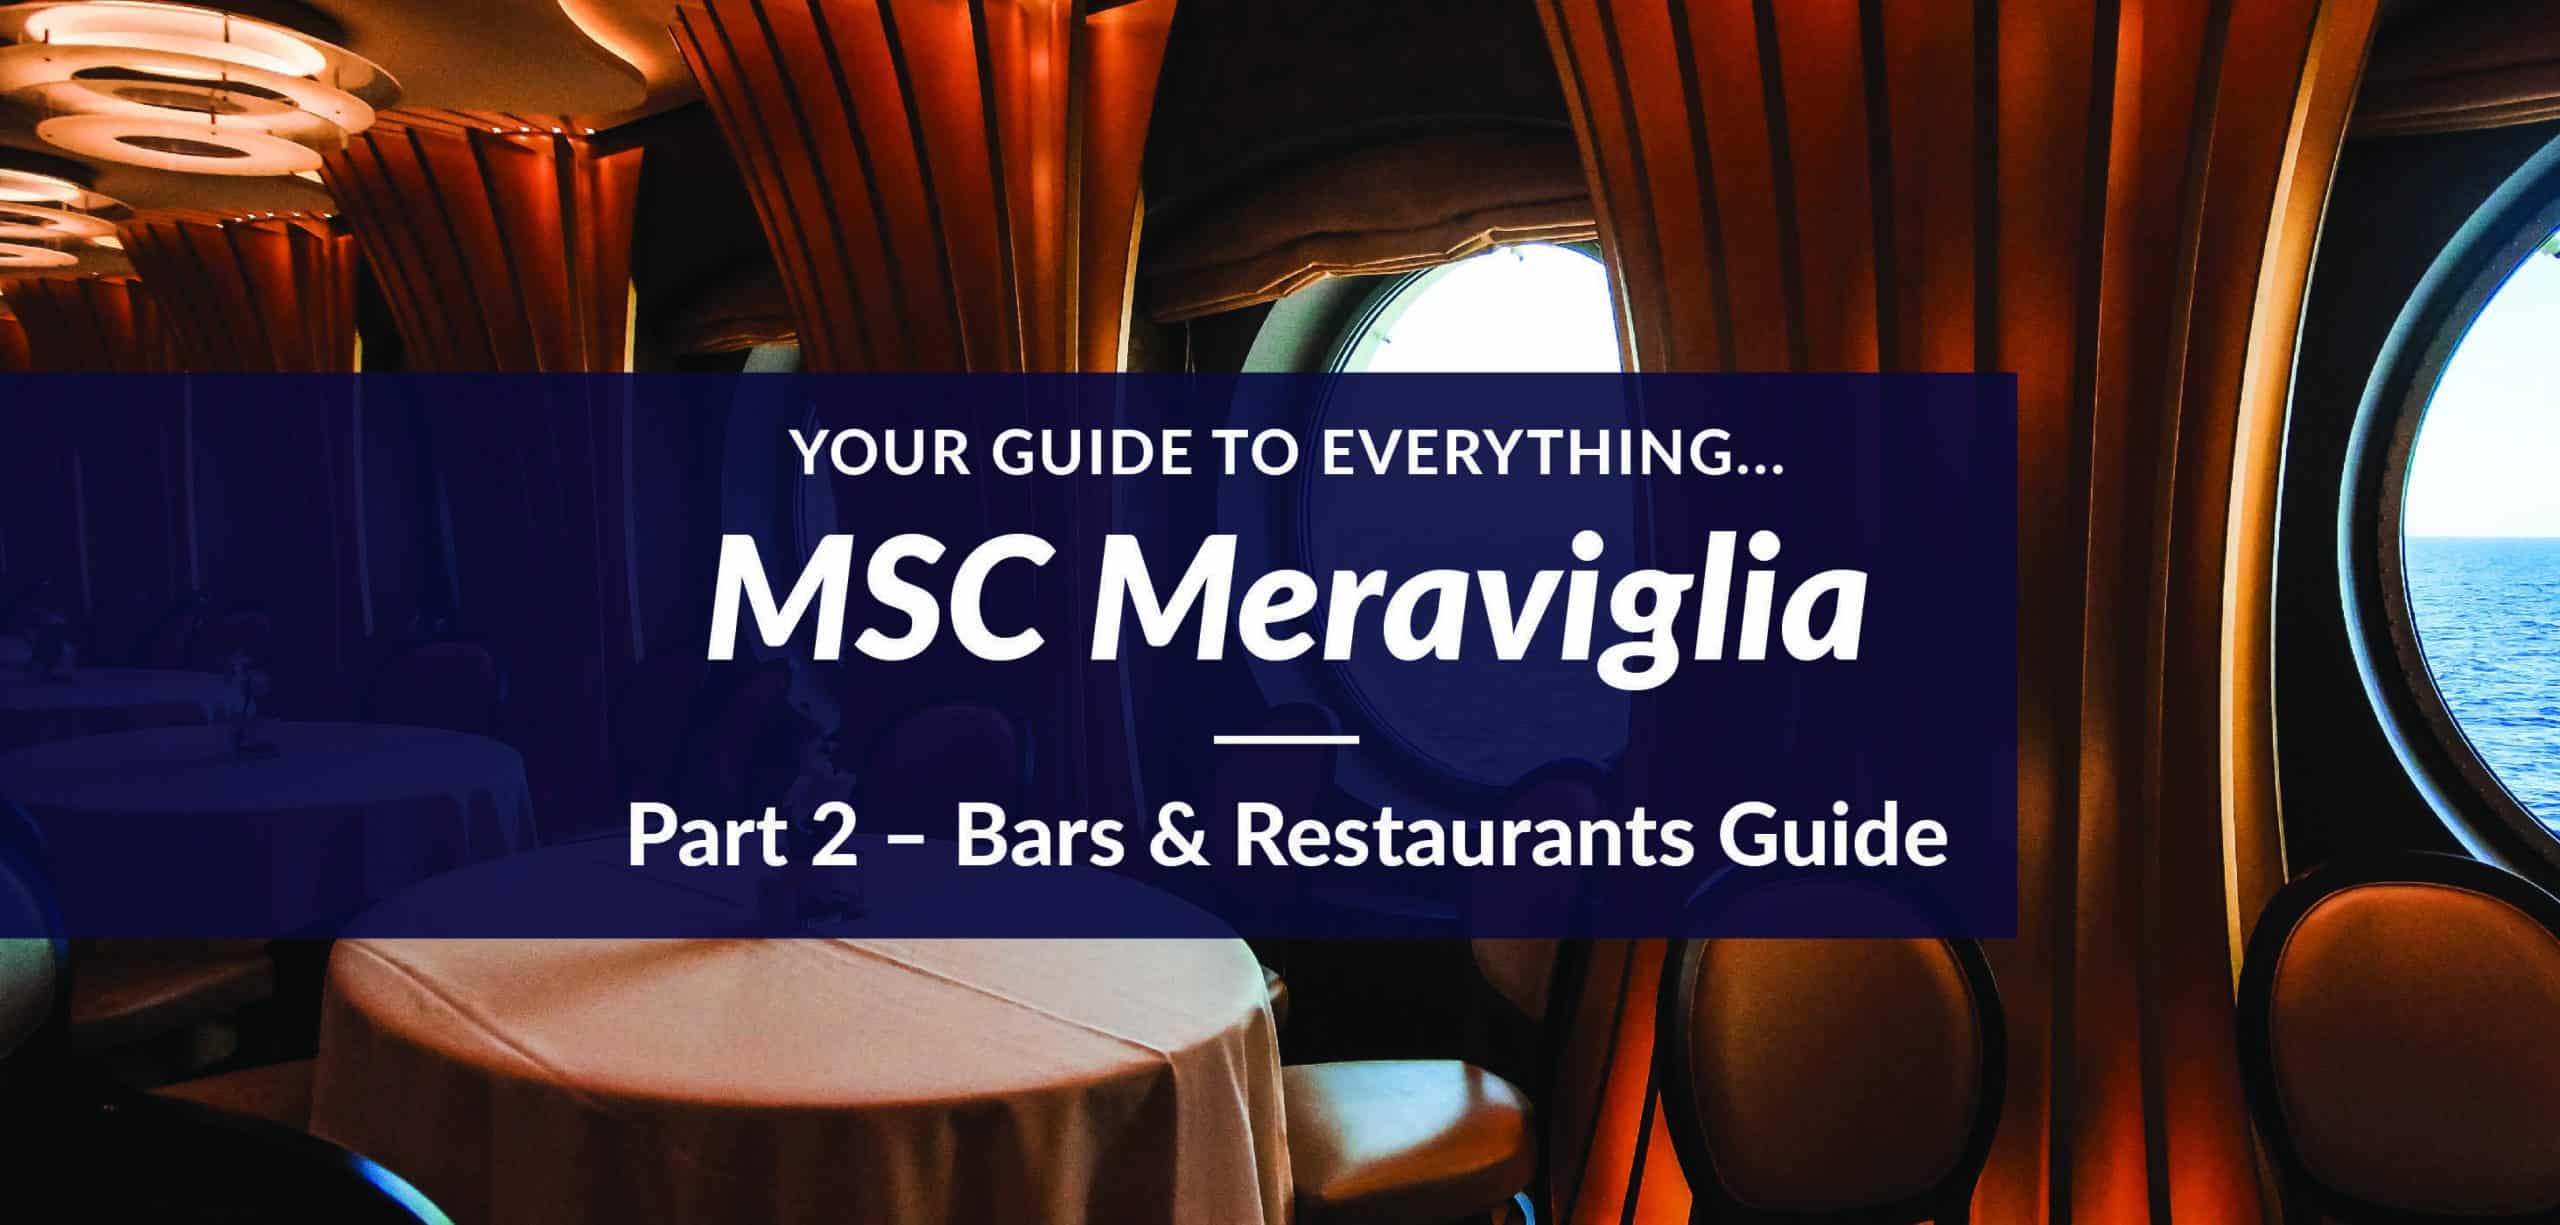 MSC Meraviglia Bars & Restaurants Guide